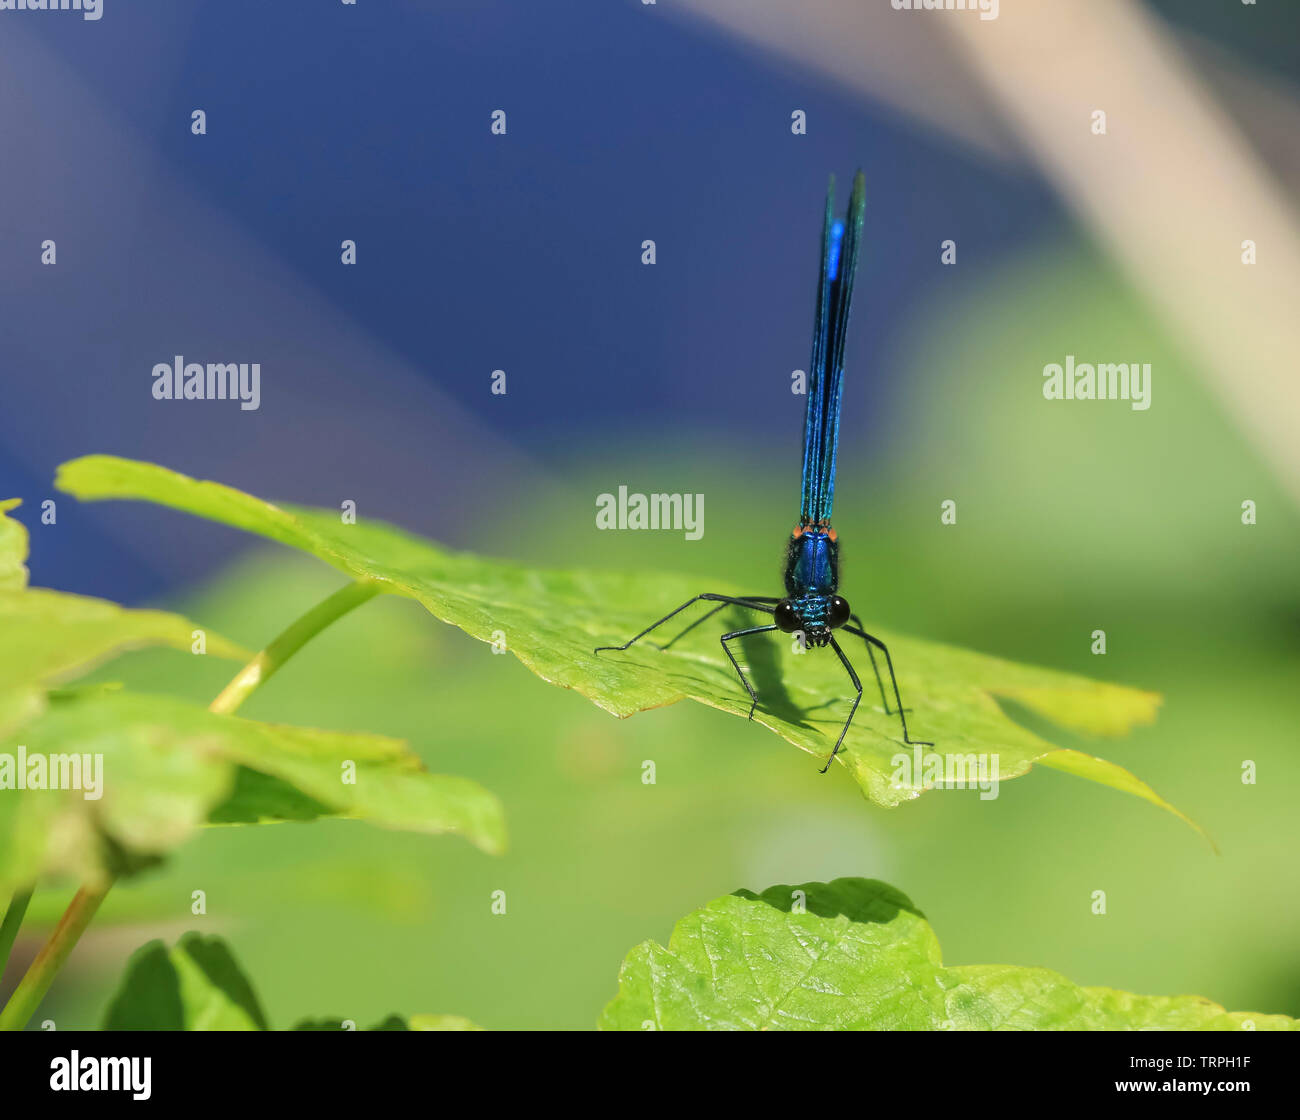 Détaillé, macro, front view close up of a wild UK libellule insecte (Zygoptera) isolés à l'extérieur dans le soleil, perché sur une seule feuille verte. Banque D'Images